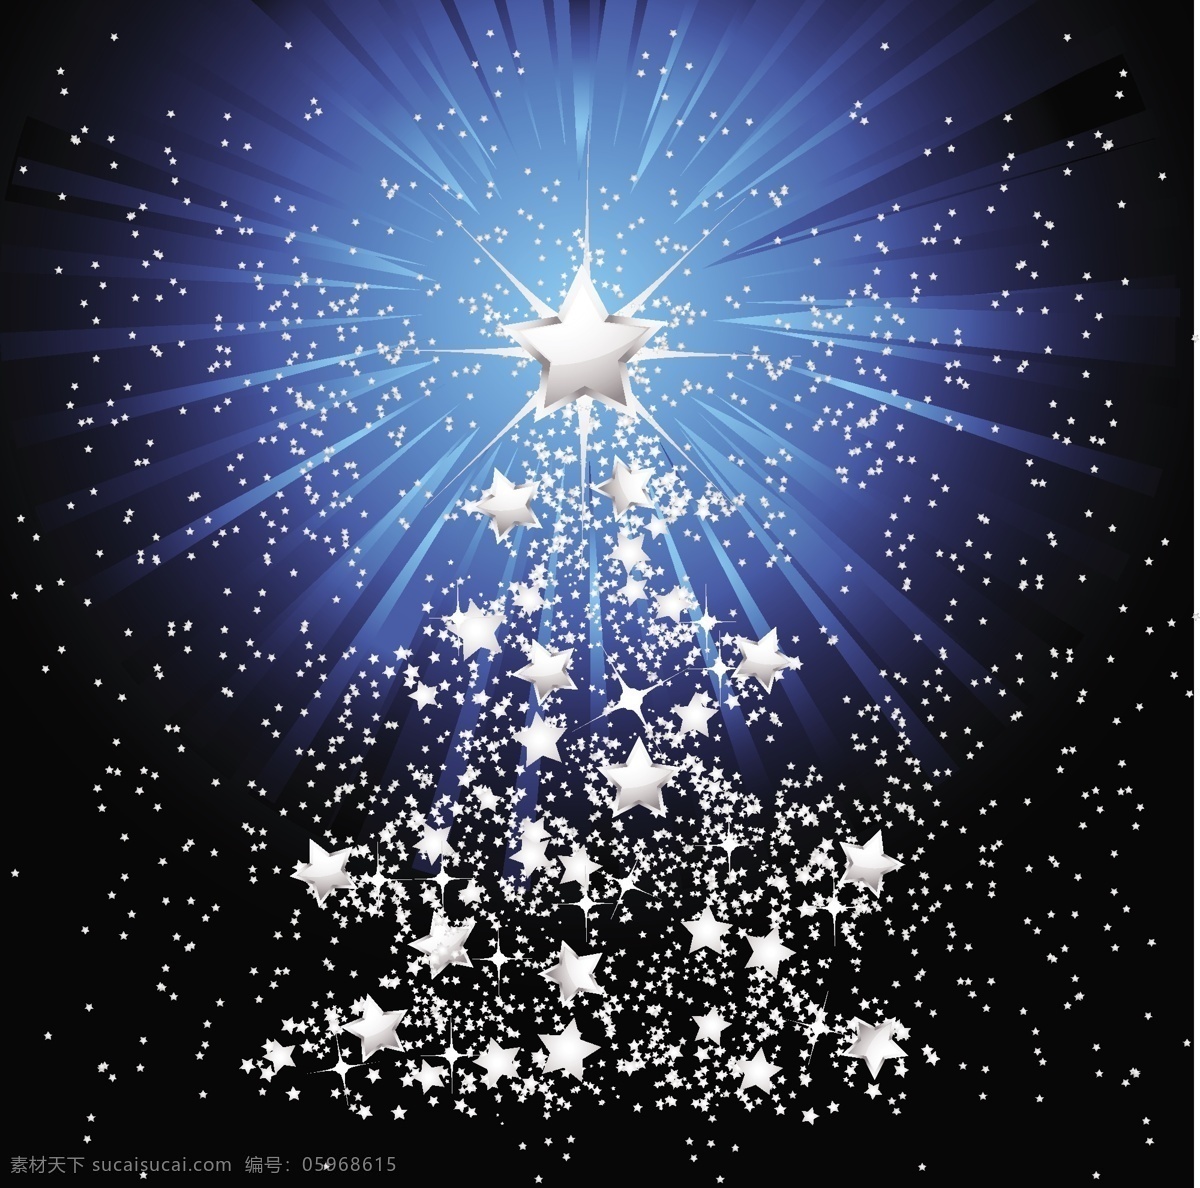 矢量 星光 放射 背景 圣诞树 闪光 圣诞 星星 雪花 元素 节日素材 其他节日